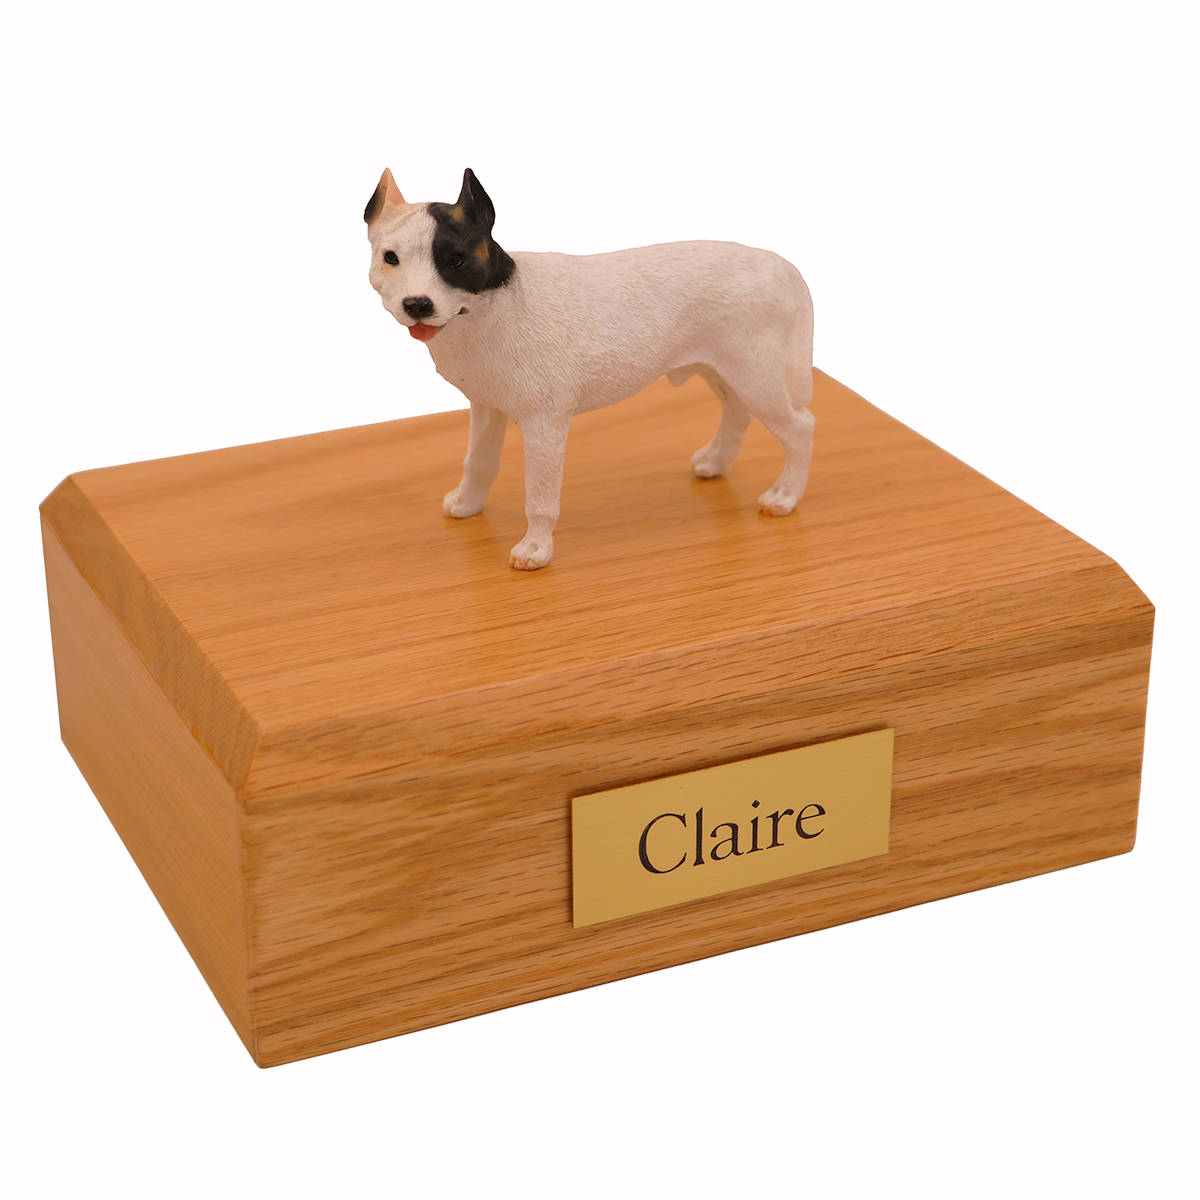 Dog, Pit Bull Terrier, White - Figurine Urn